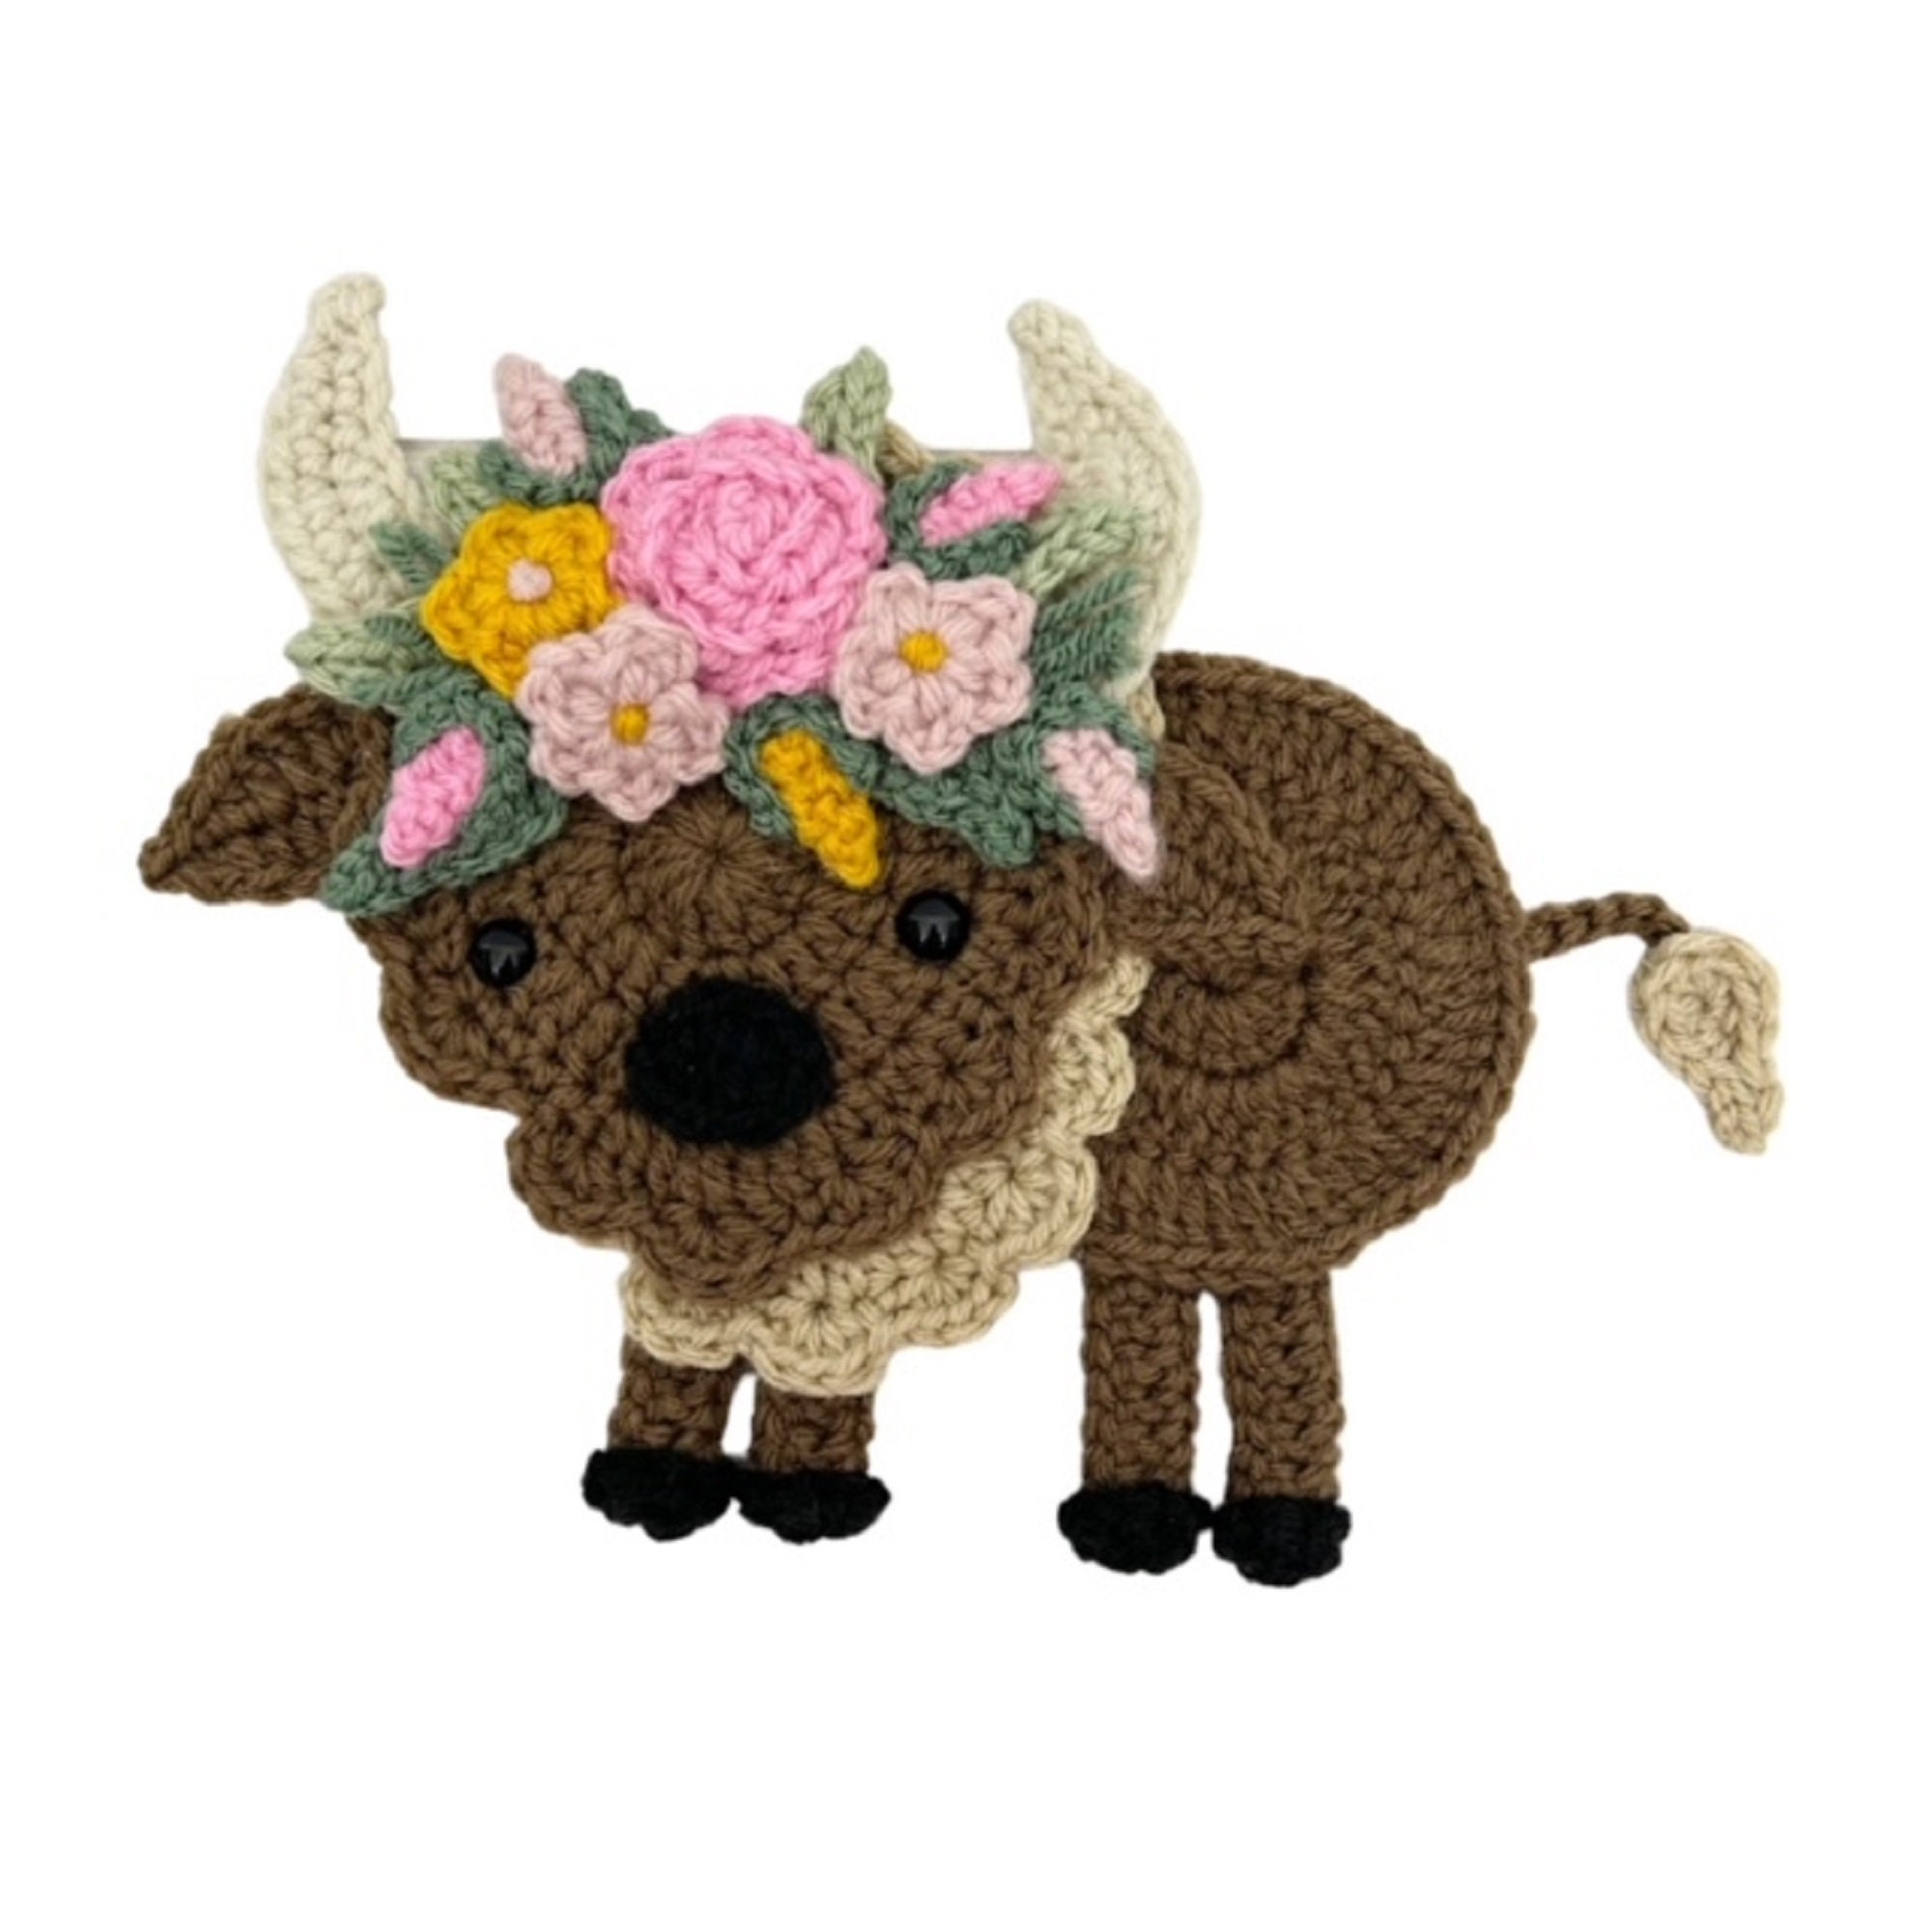 BoHo Buffalo Crochet Applique, Pre-made Animal Applique, Crochet